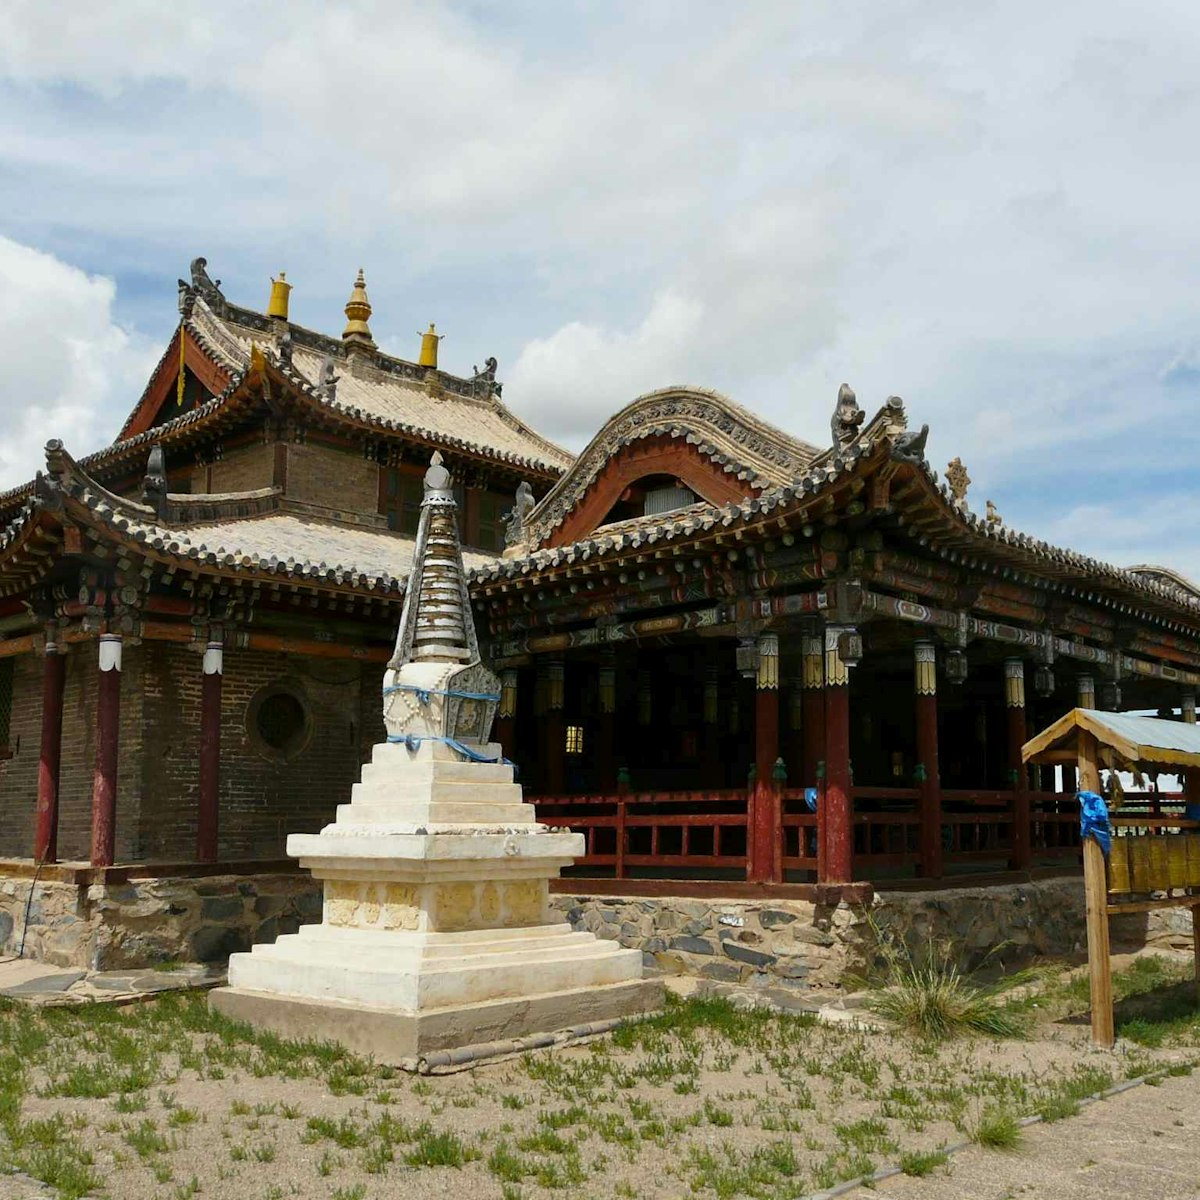 Gimpil Darjaalan Khiid, monastery in Erdenedalai.